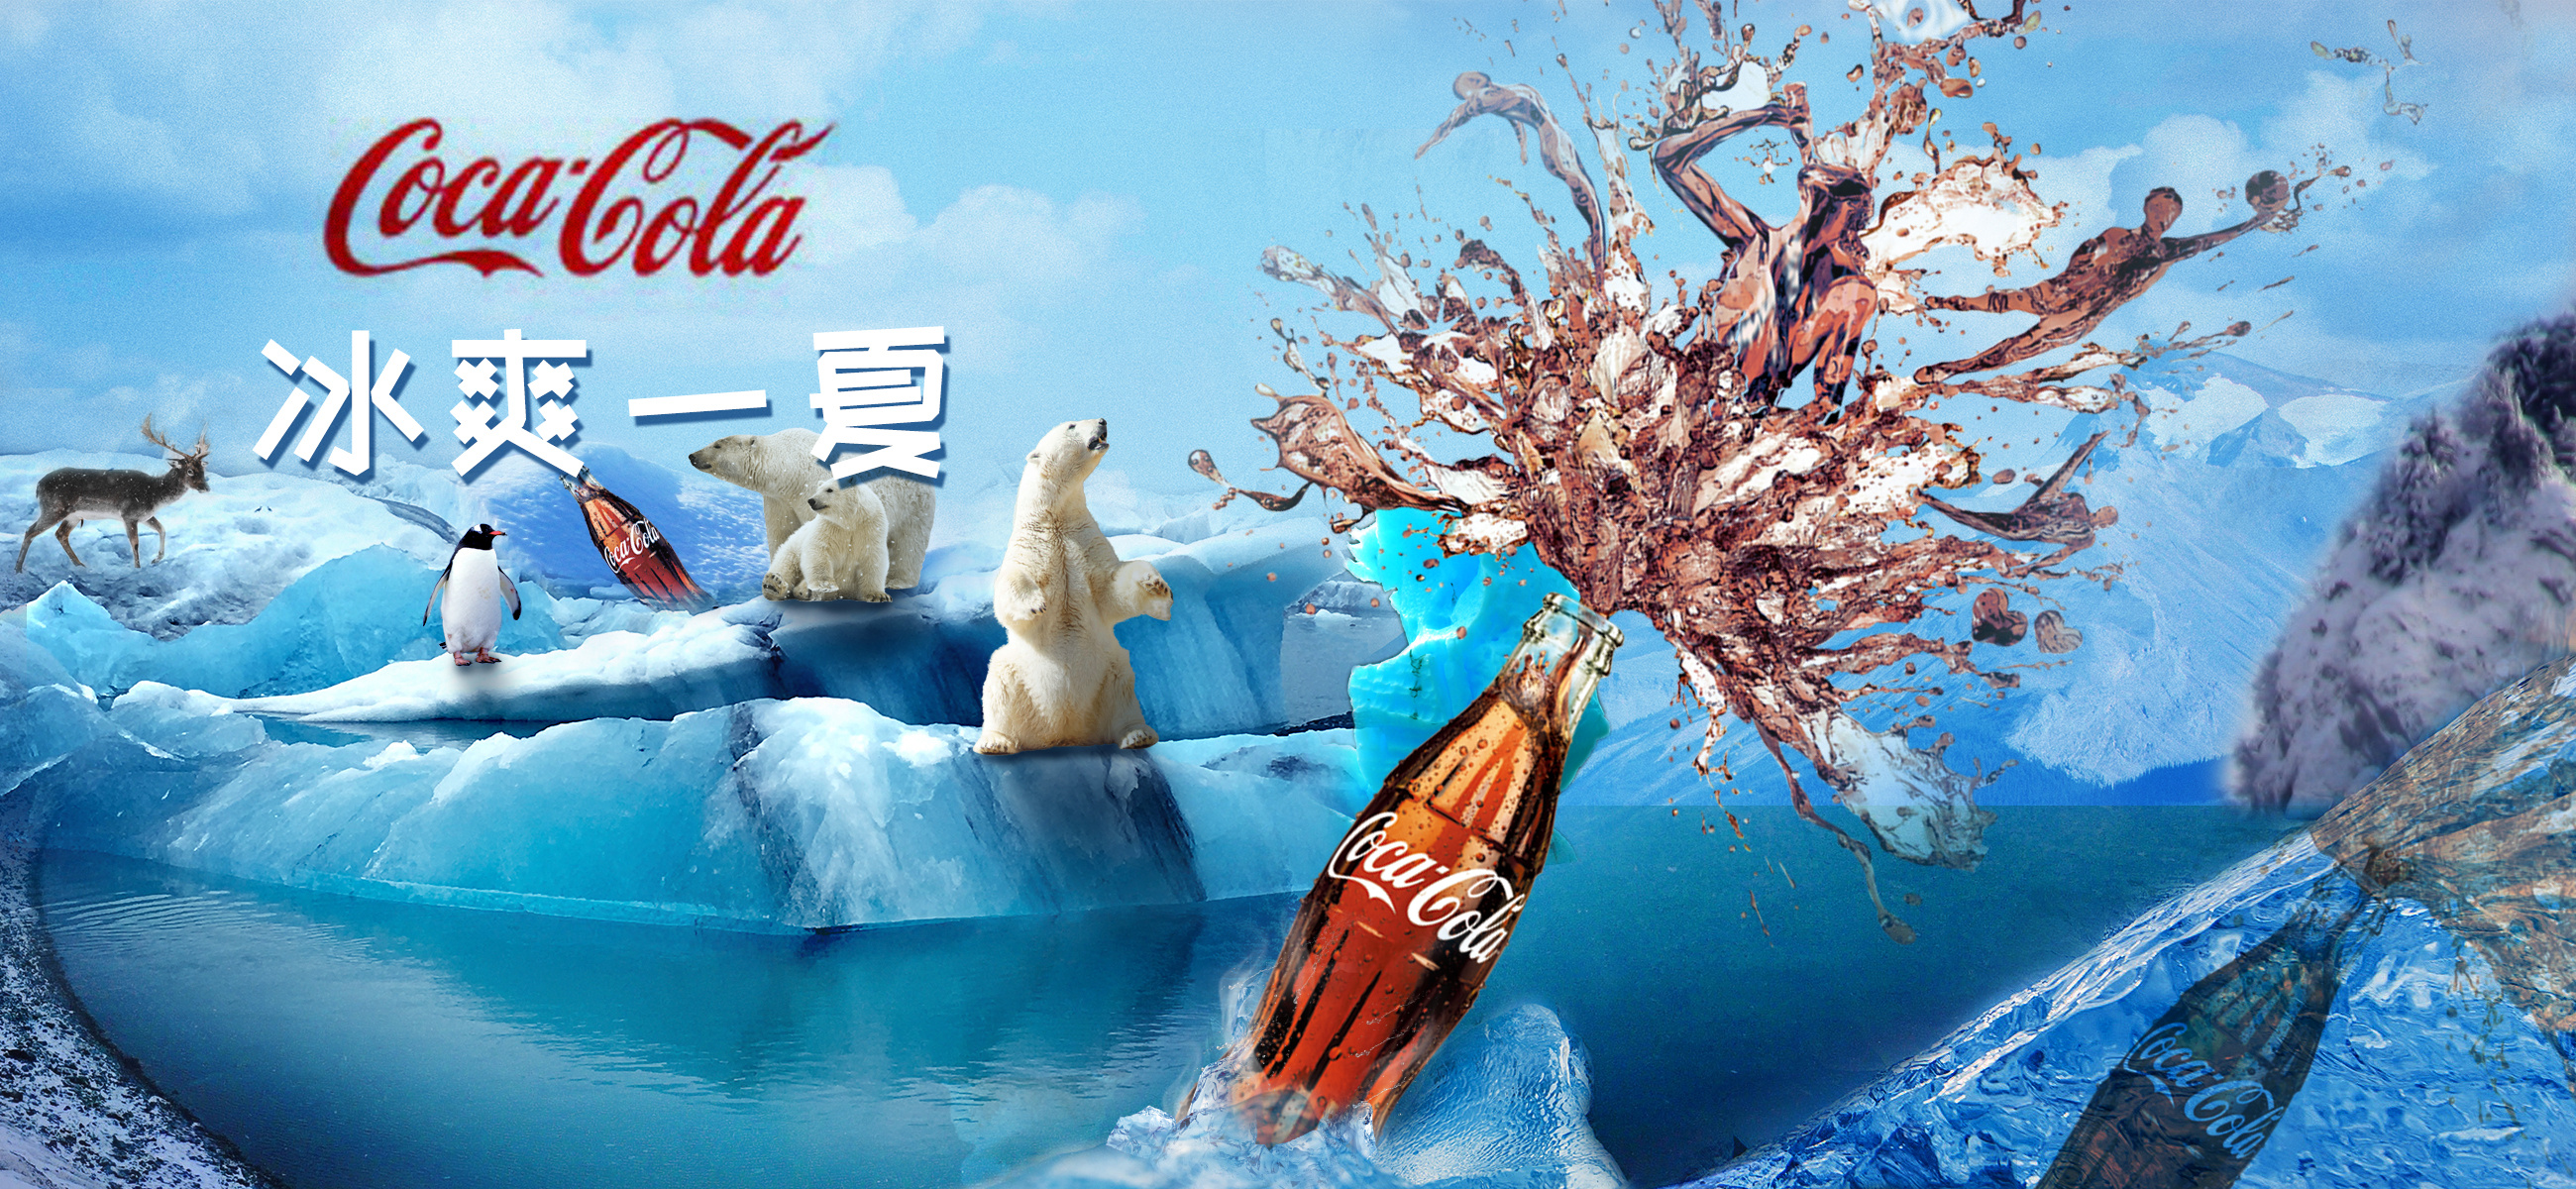 可口可乐创意宣传广告图片素材-编号19754989-图行天下